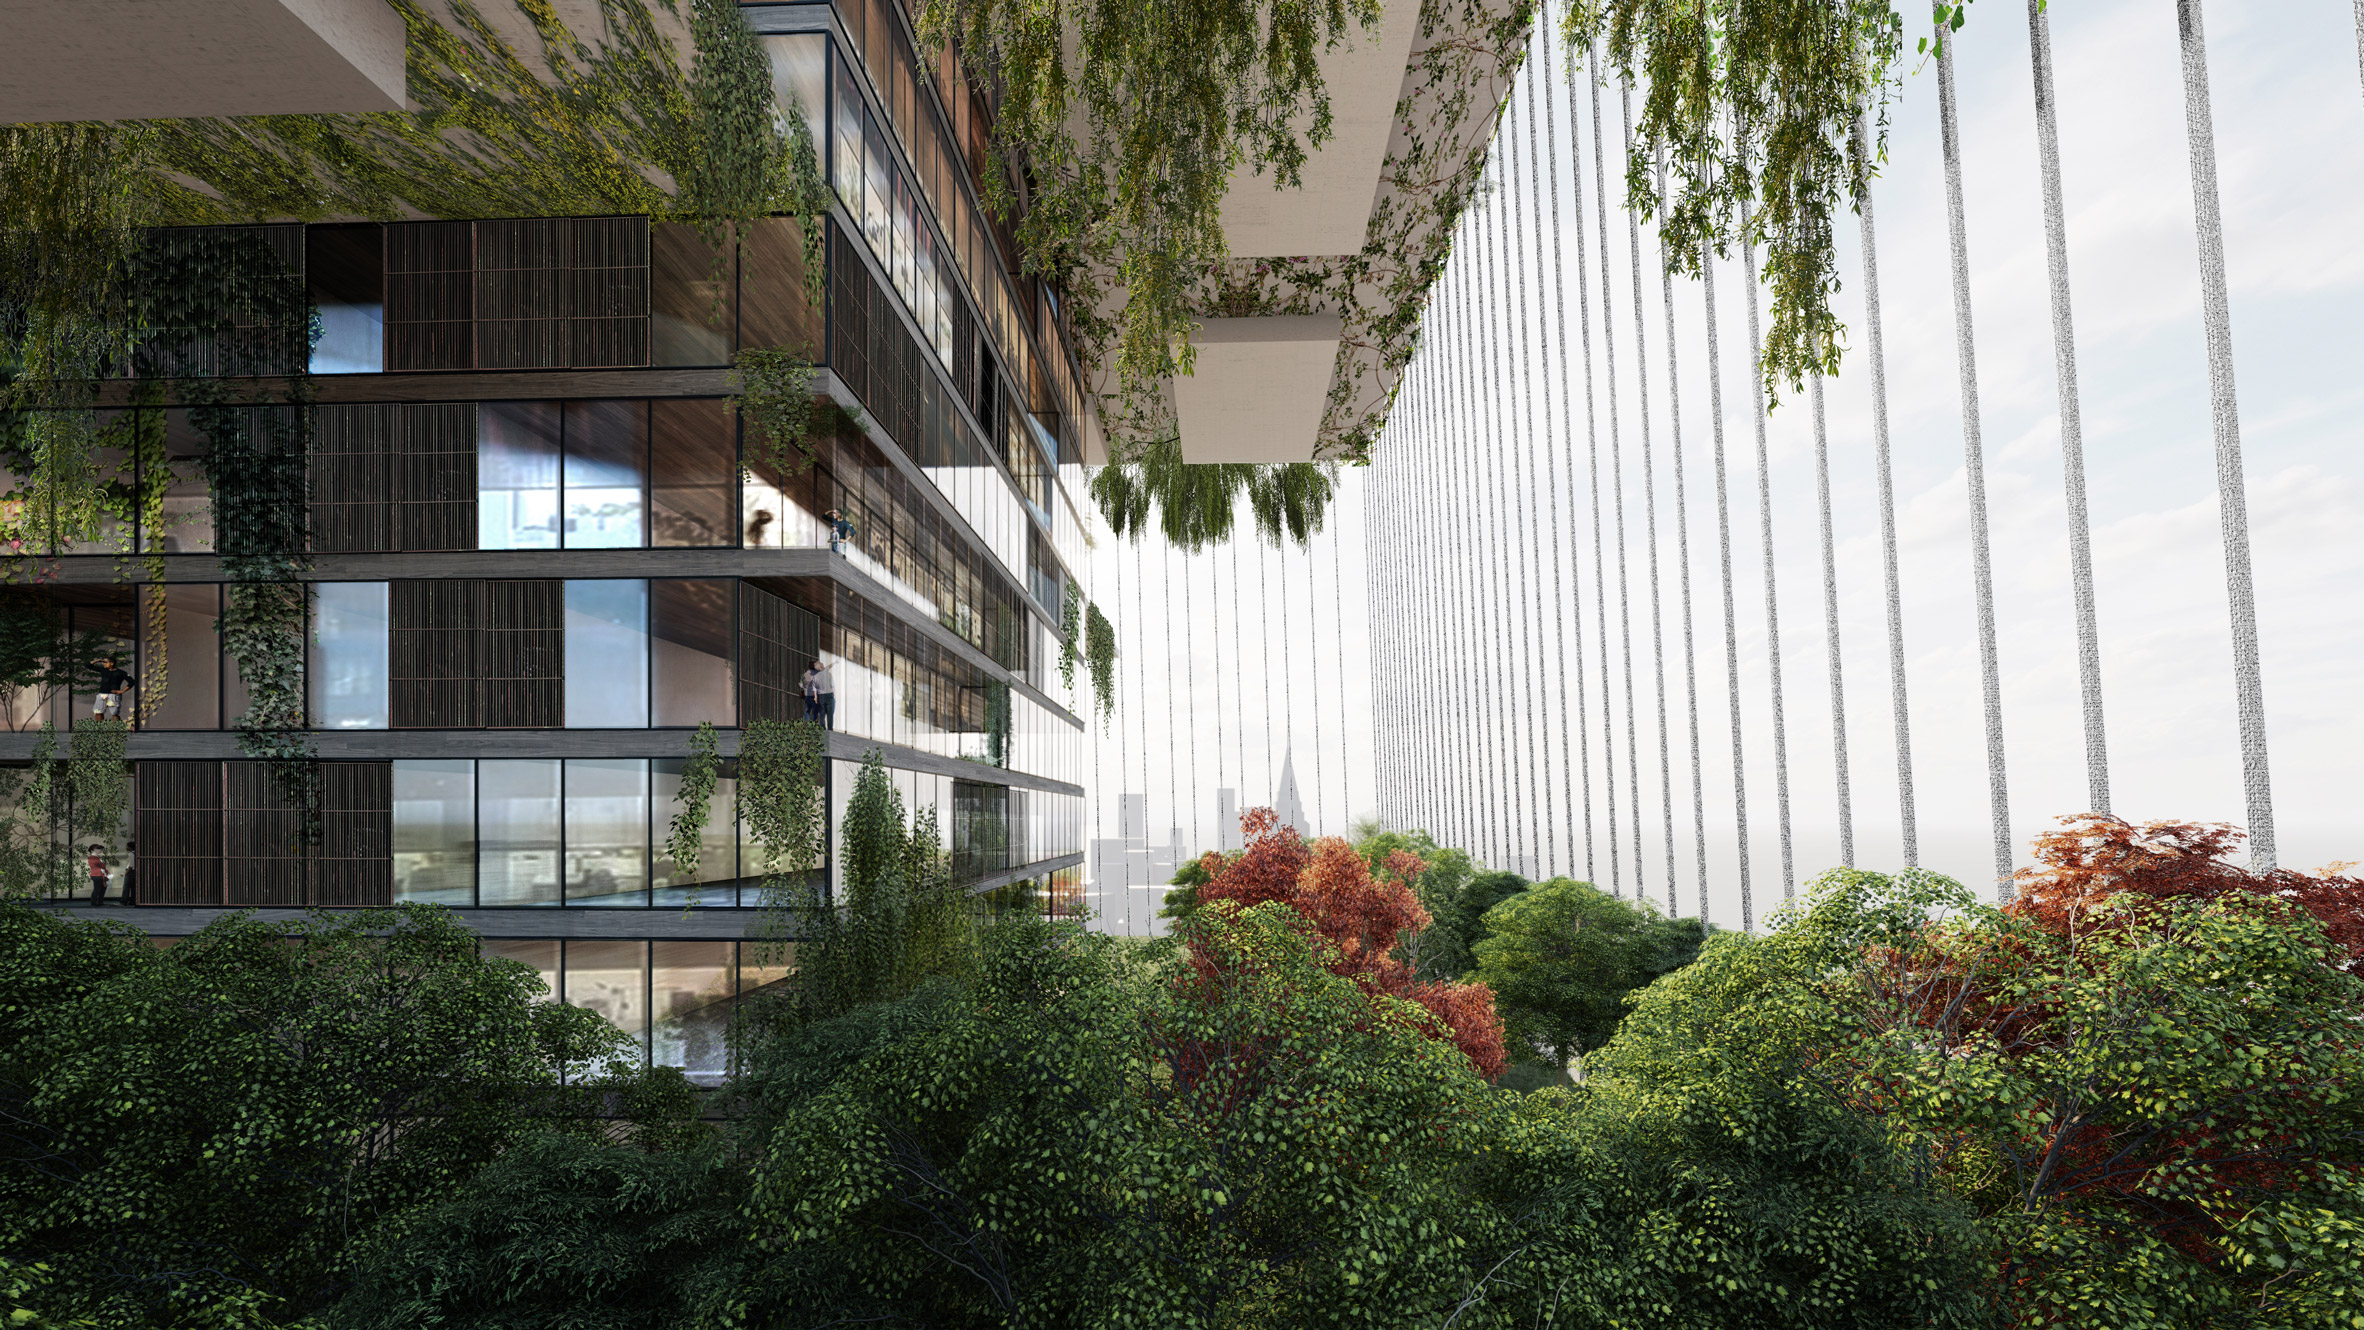 Piero Lissoni Designs Conceptual New York Skyscraper As Self Sufficient Garden City